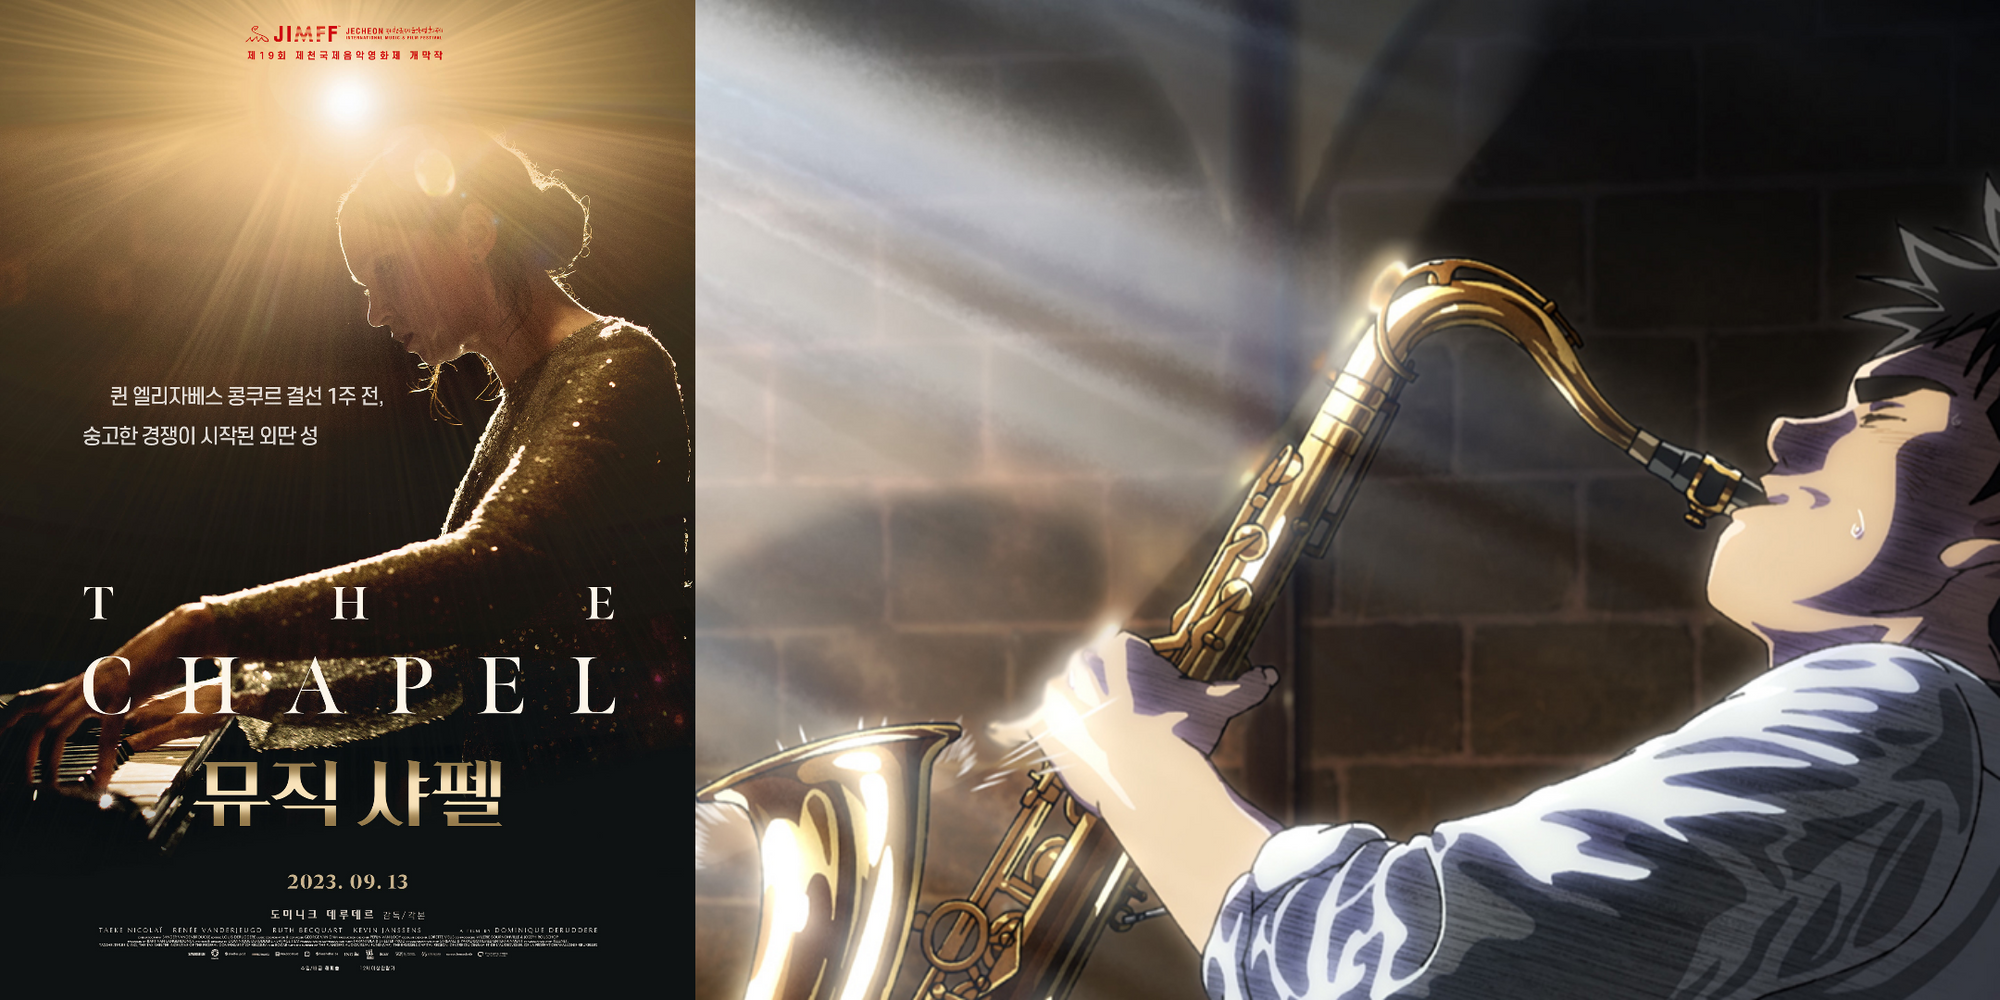 개막작 ‘뮤직 샤펠’ 포스터(왼쪽)와 폐막작 ‘블루 자이언트’ 스틸컷(오른쪽)